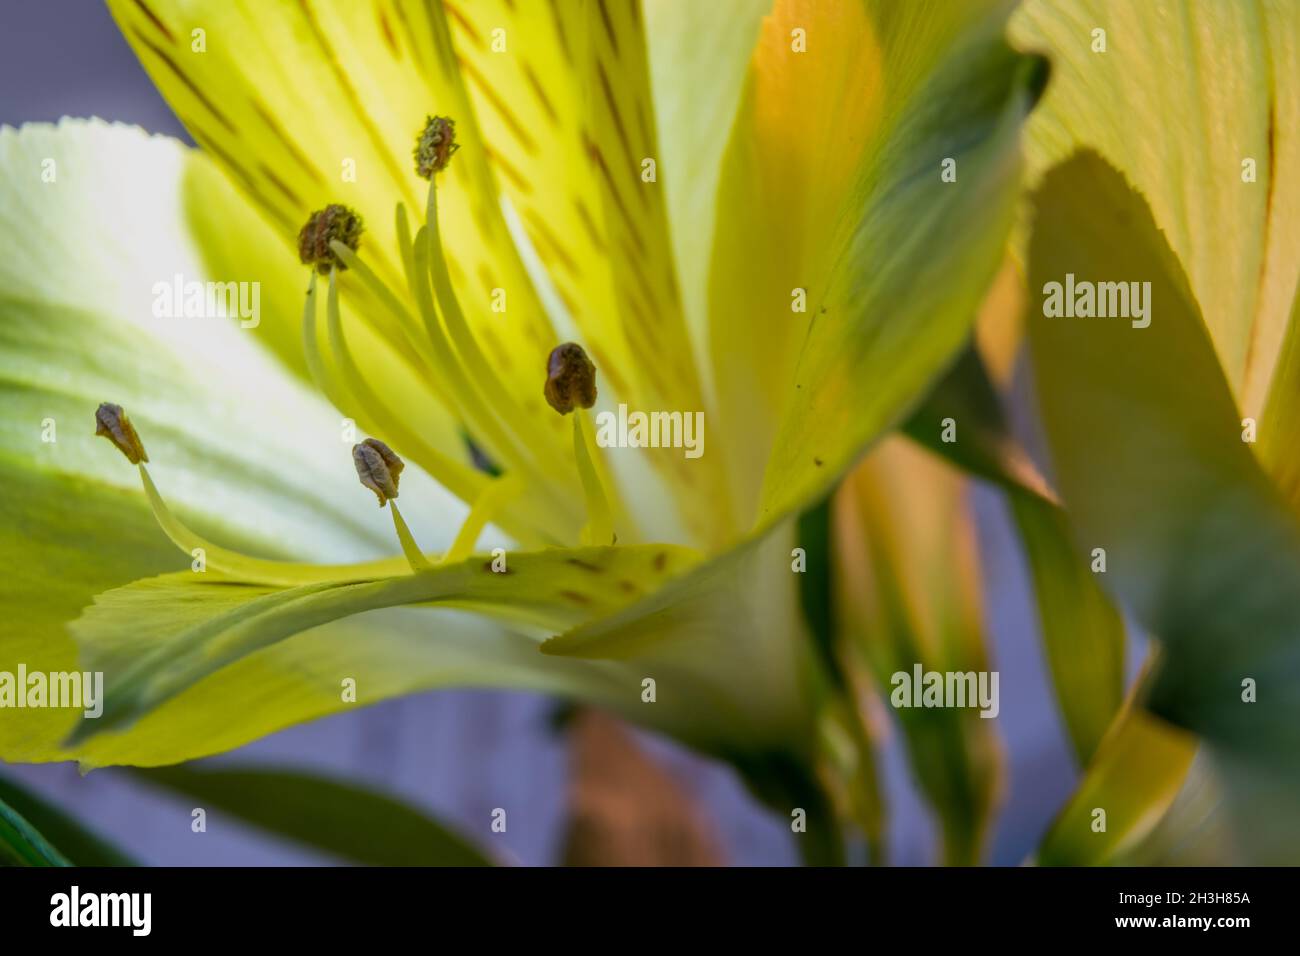 Image macro de fleur d'alstroemeria jaune rétro-éclairée avec fond bleu flou et tiges vertes complètent la composition Banque D'Images